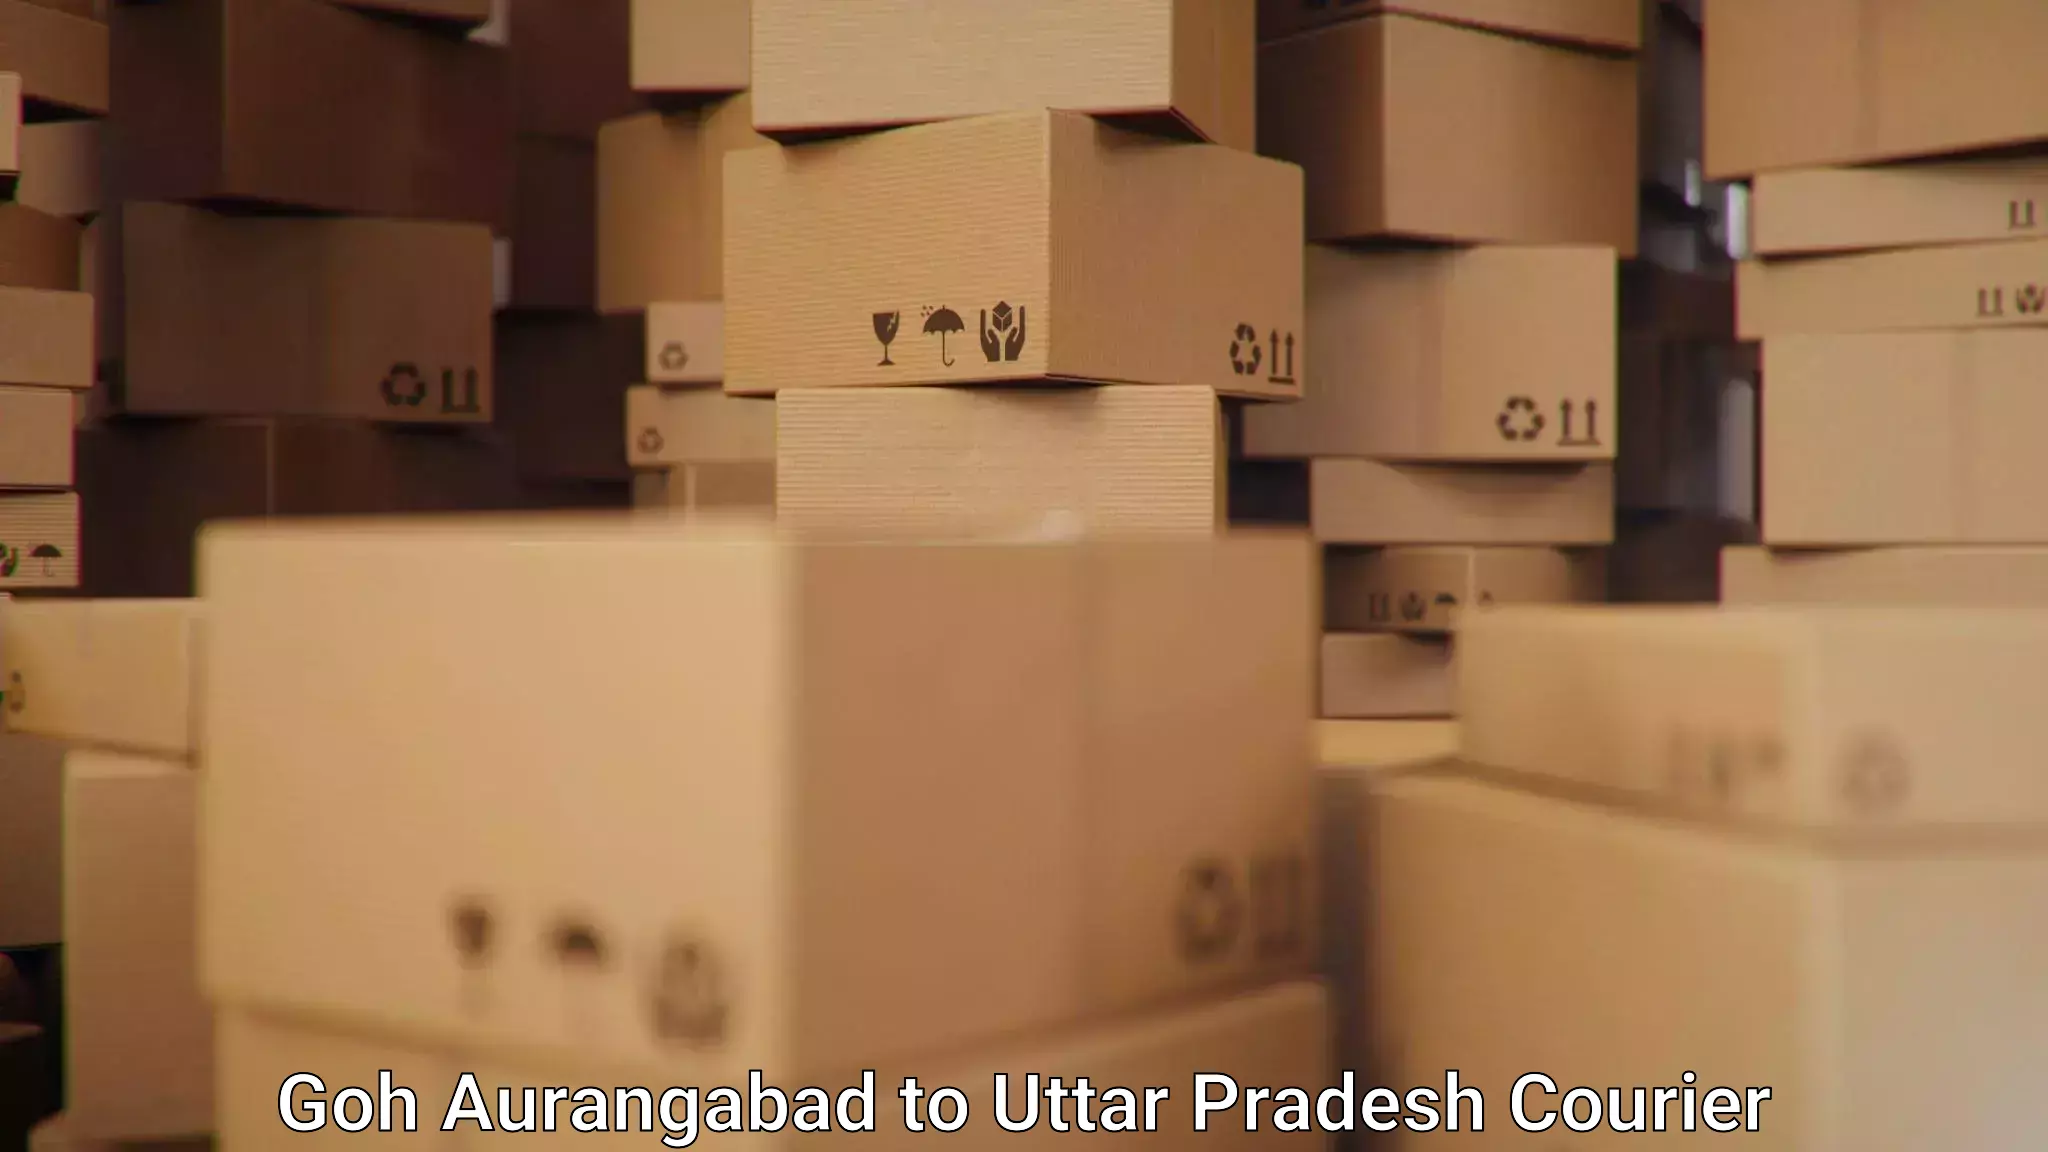 Efficient parcel service Goh Aurangabad to Kerakat